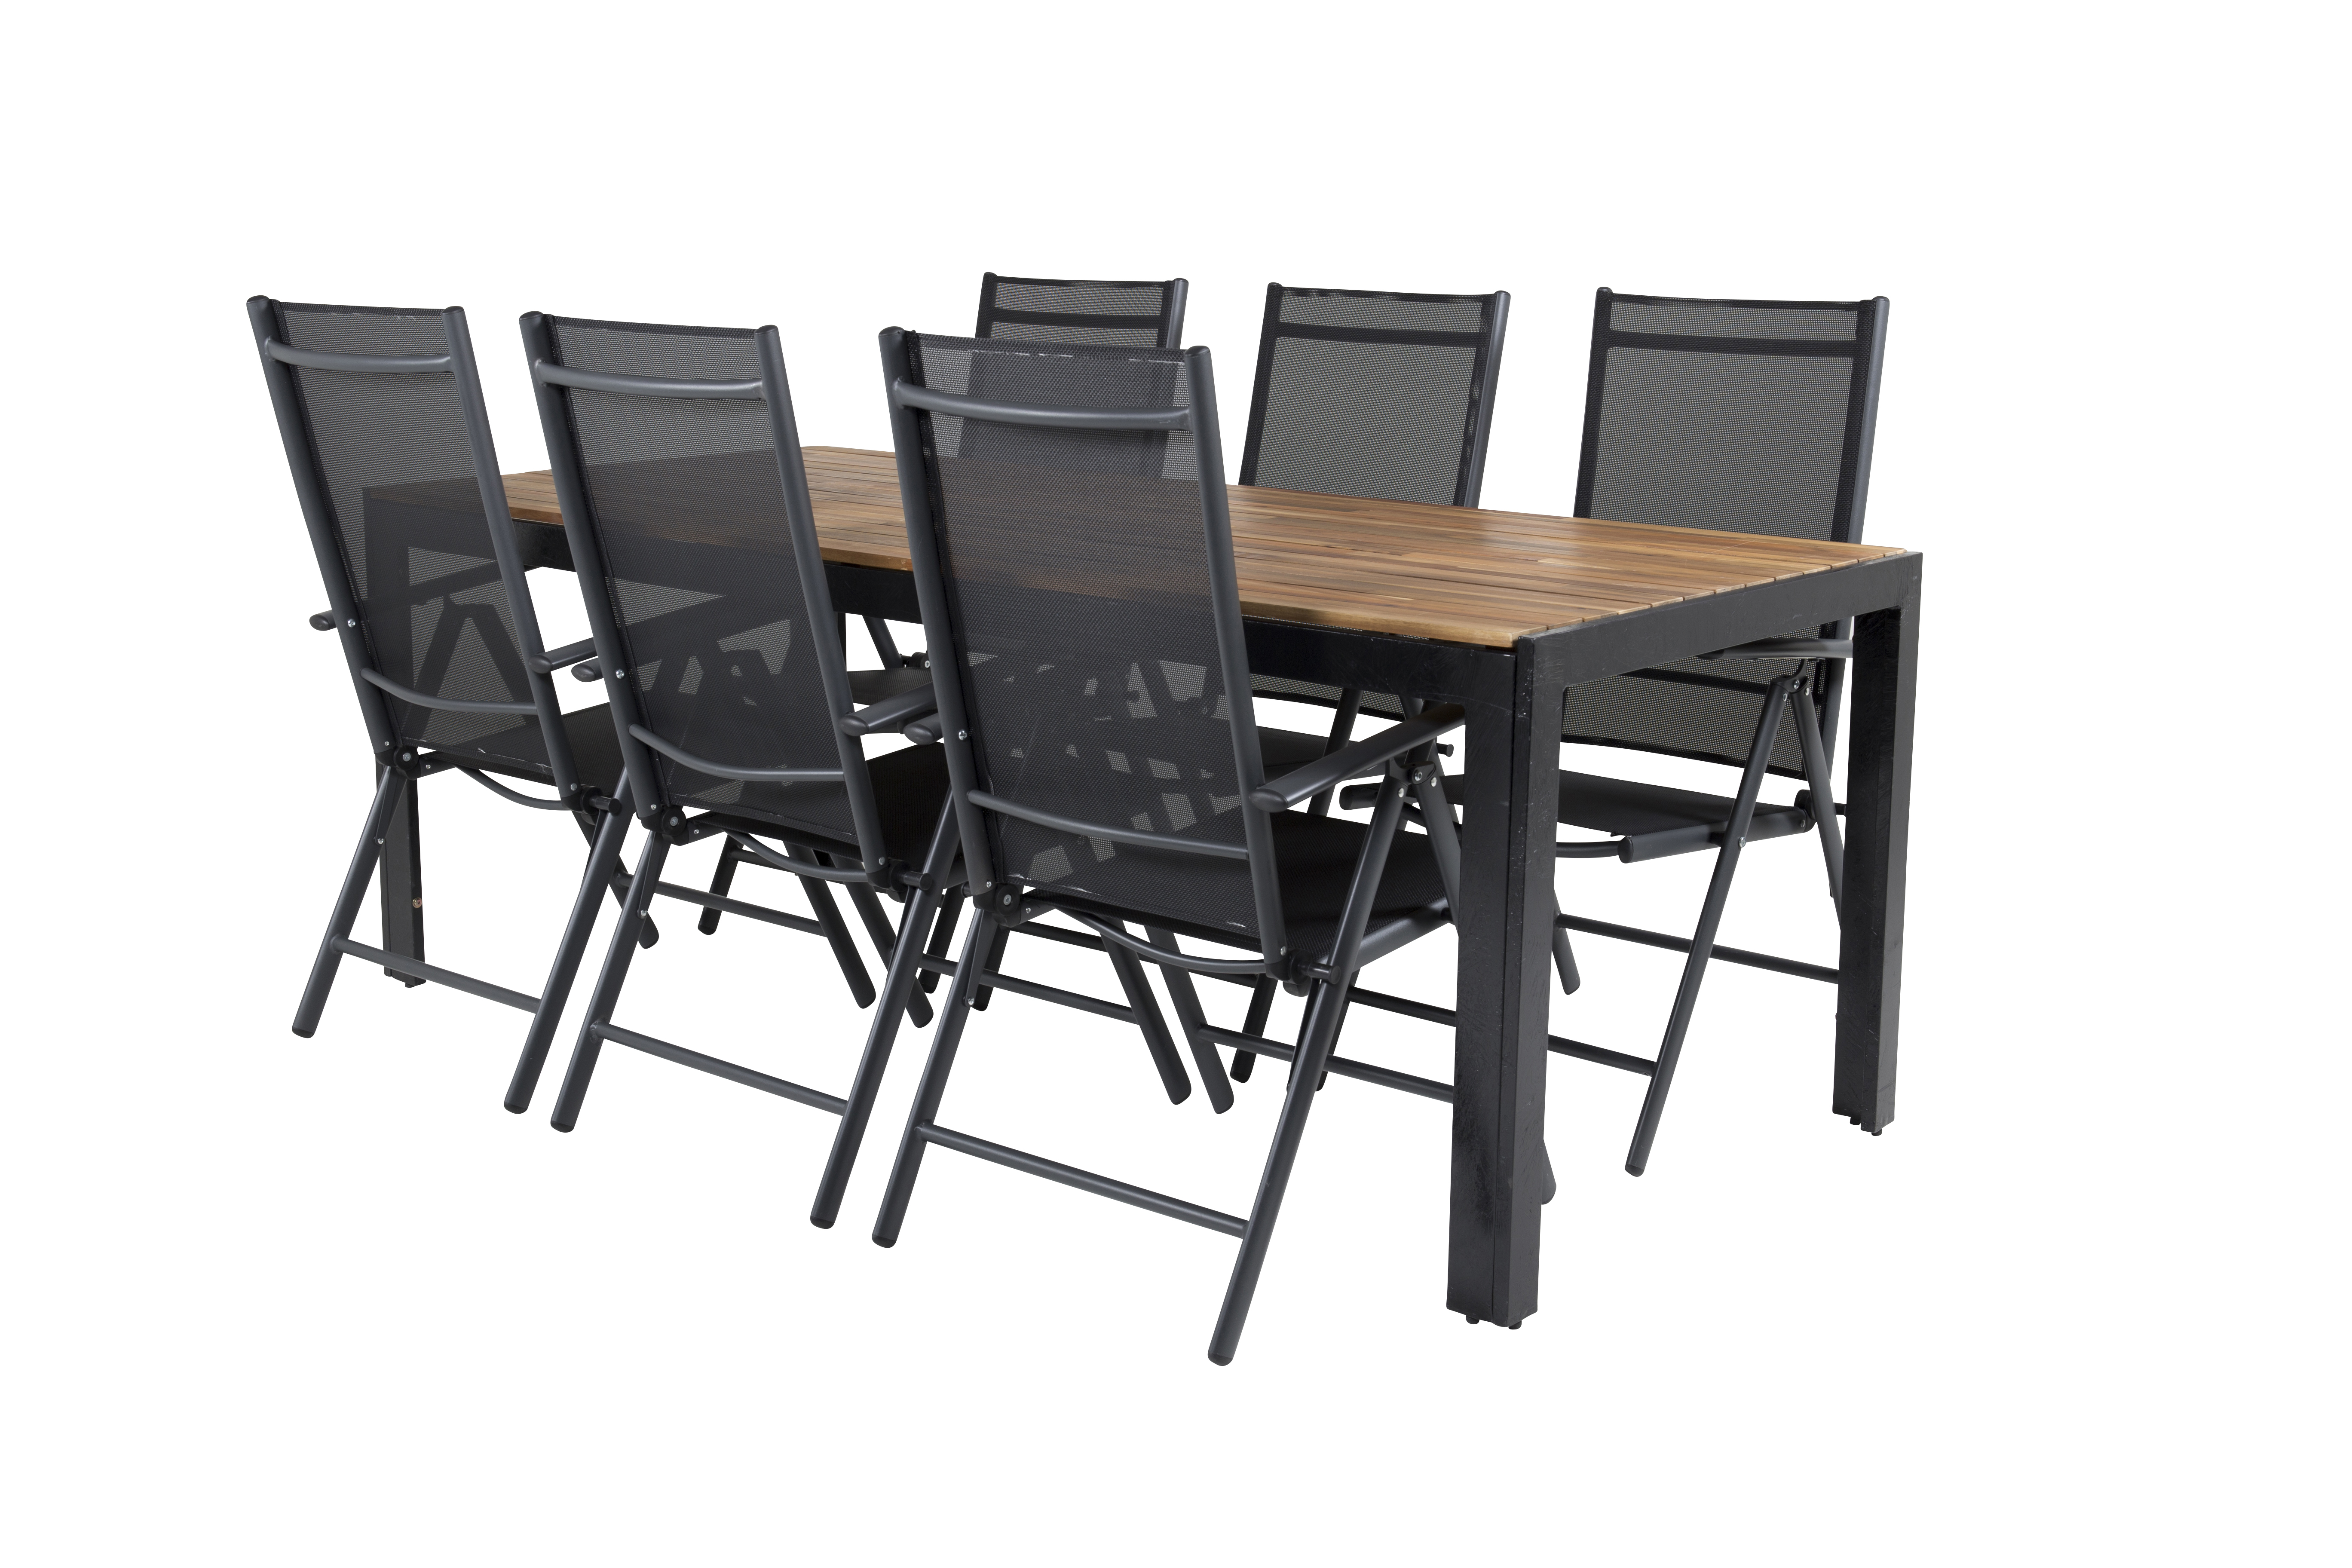 Venture Design - Bois Garden Table 205x90 cm - Acacia/Black Legs with 6 pcs. Aaroe Position Garden Chairs - Textil - Bundle